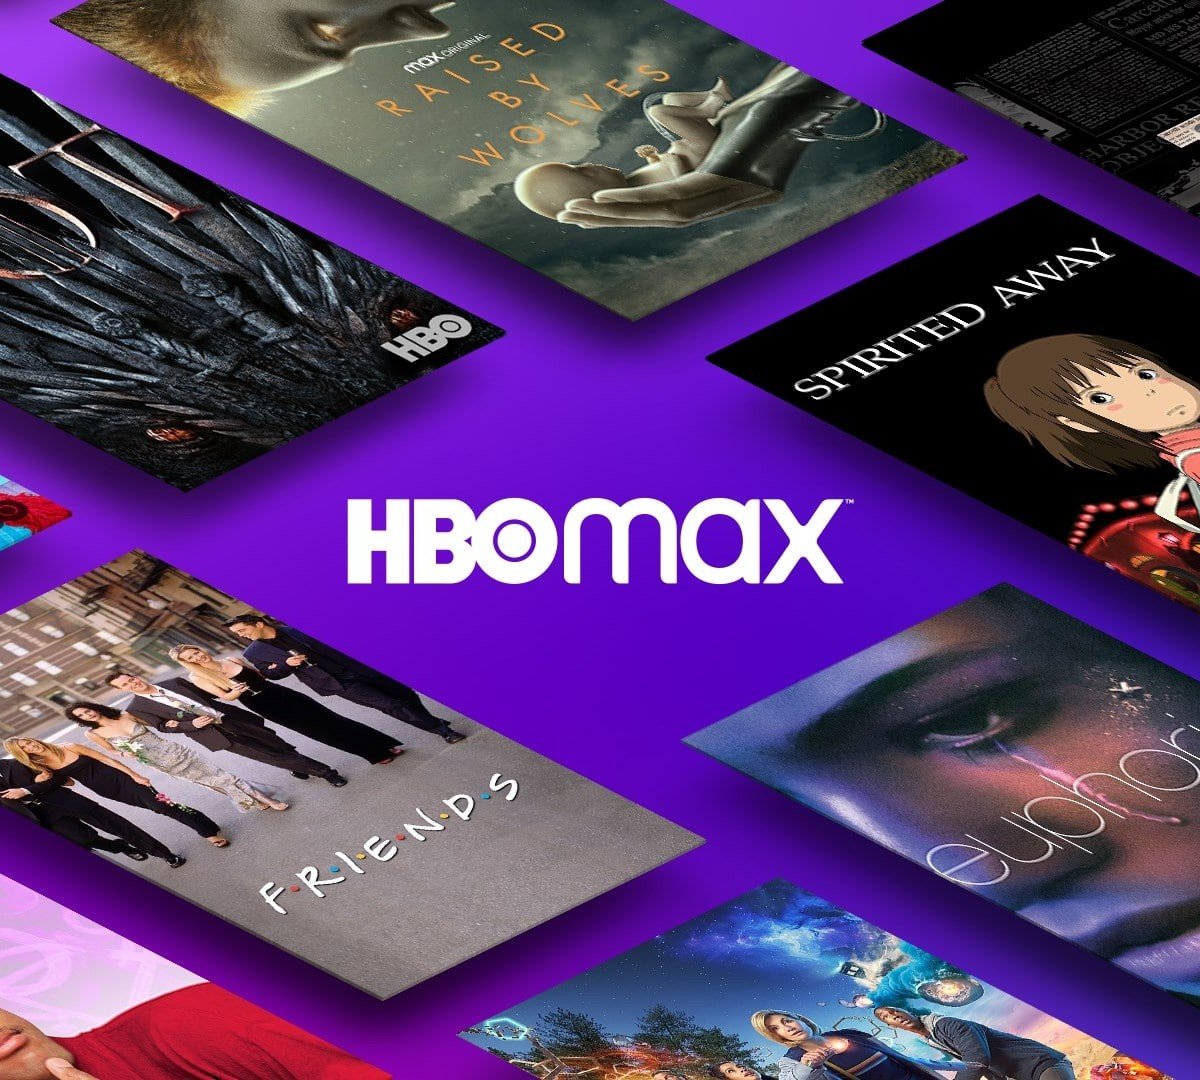 HBO Max chega ao Brasil nesta terça-feira (29) com preços a partir